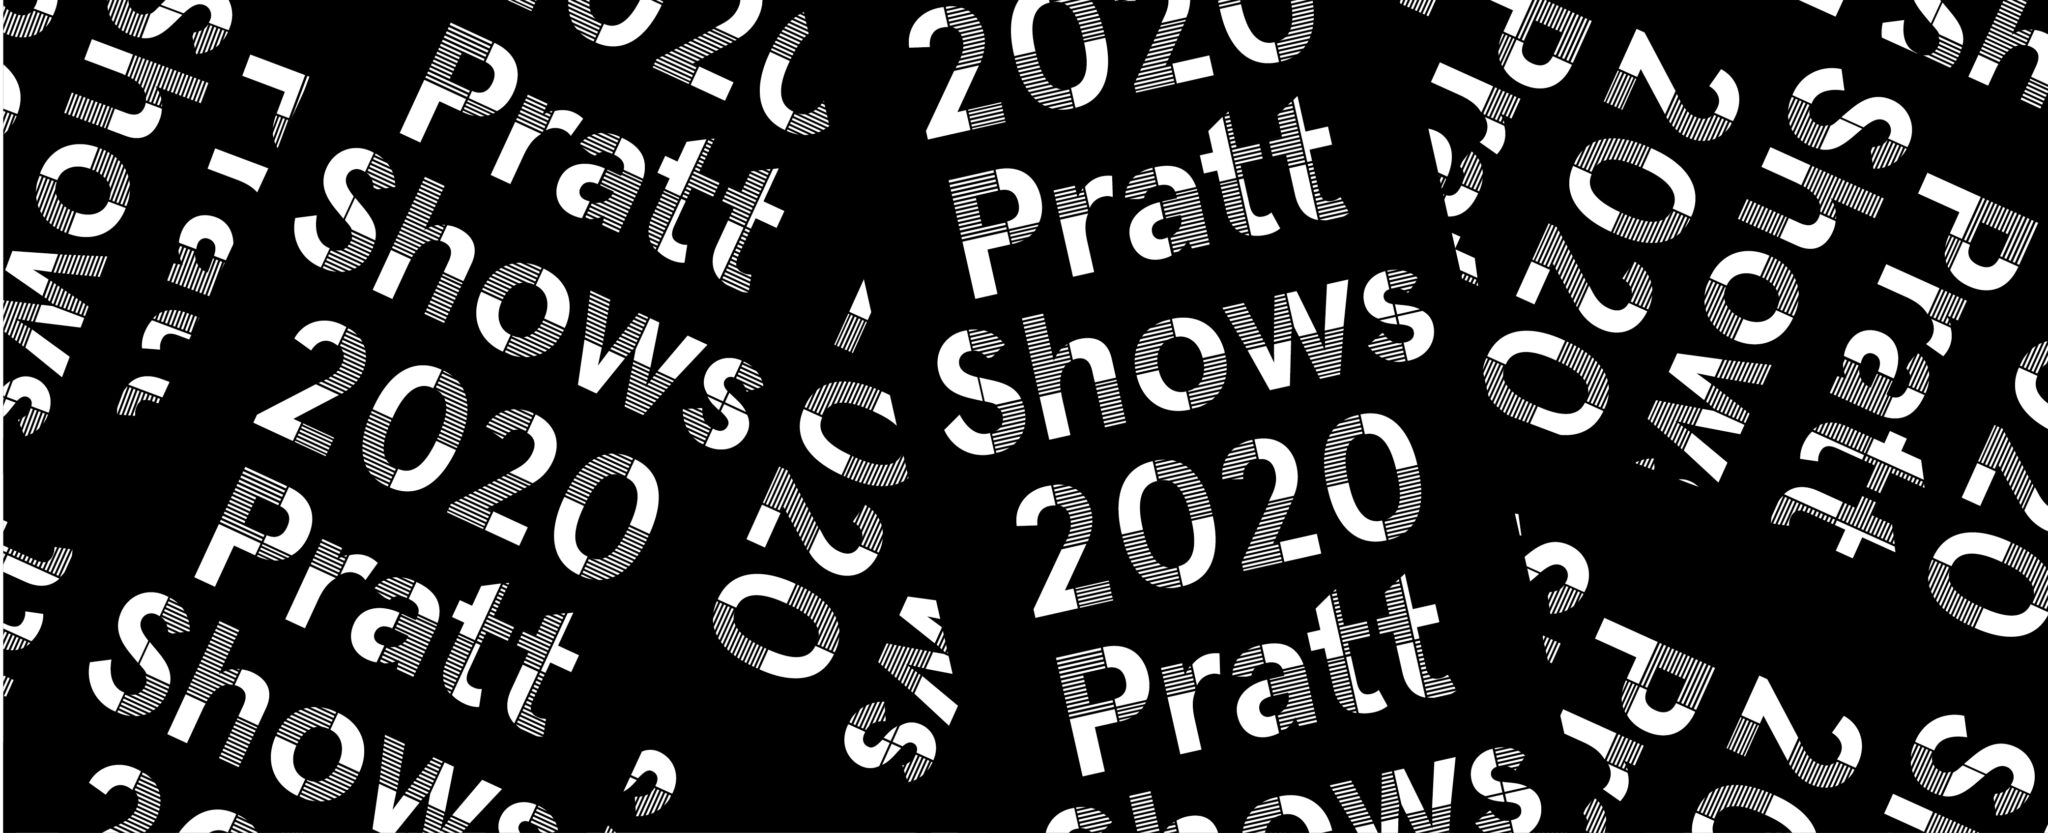 Prattshows Pratt.edu Still 2048x833 